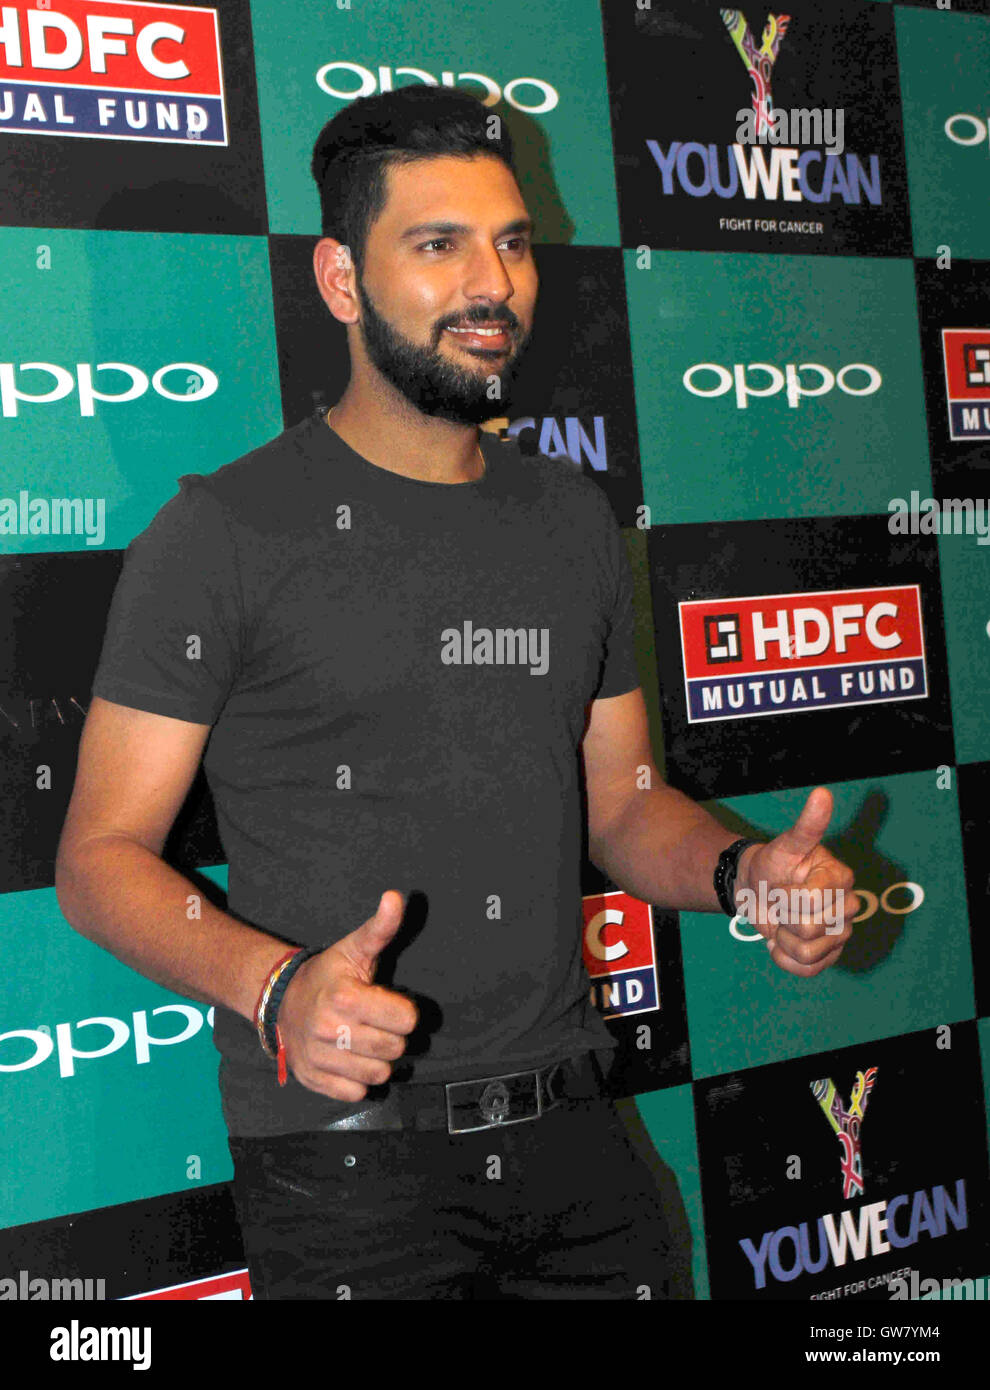 Indiano giocatore di cricket Yuvraj Singh lancio del marchio di abbigliamento YWC progettato Shantanu Nikhil Mumbai Foto Stock